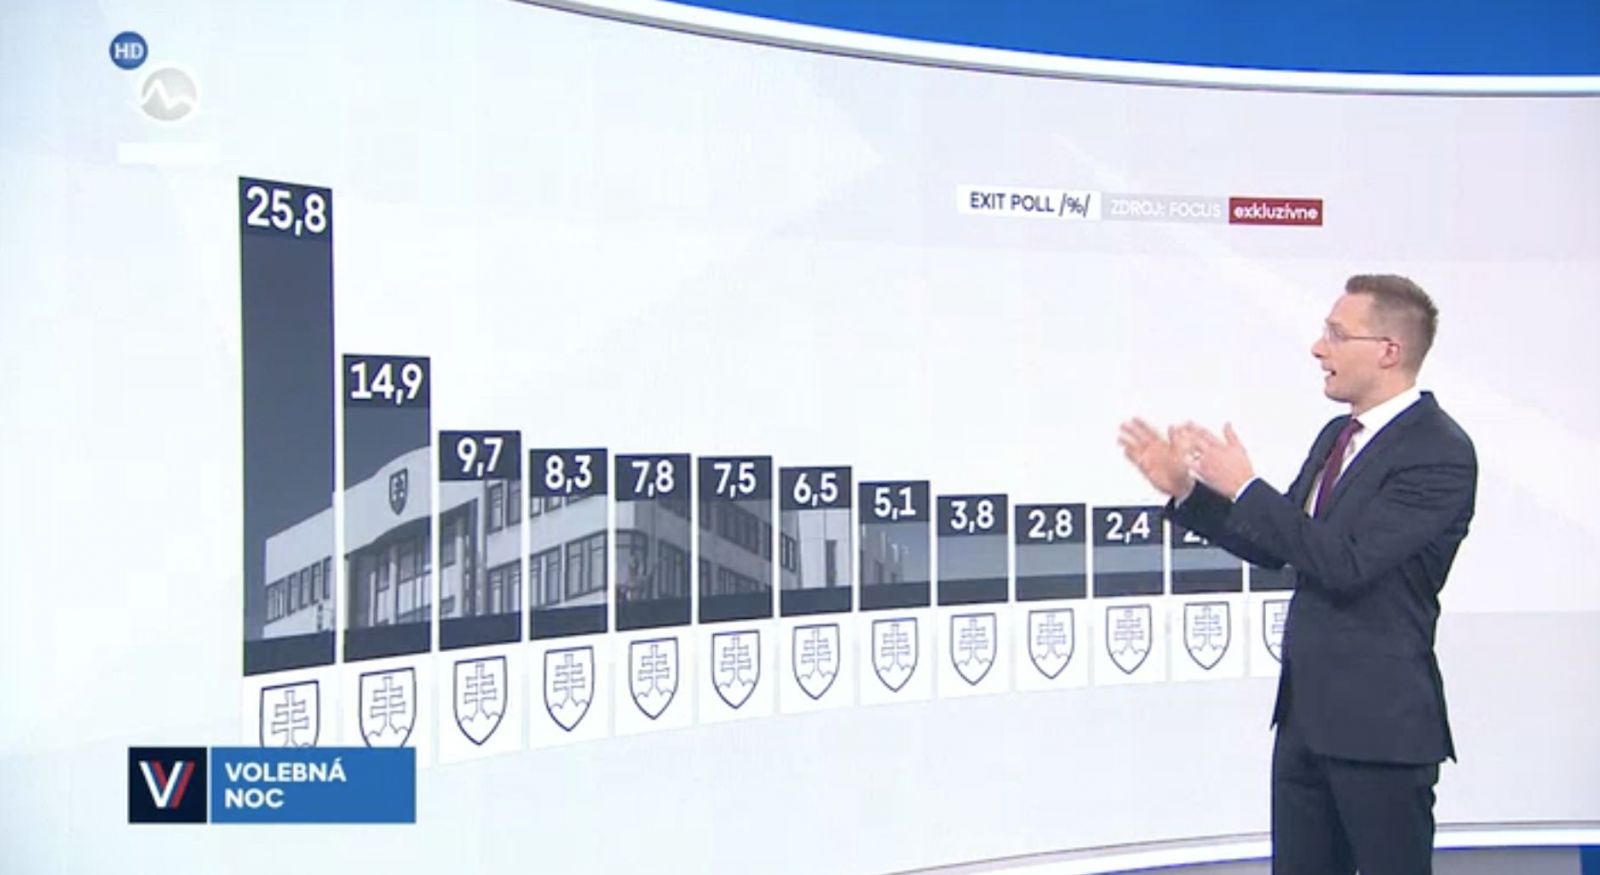 Markíza zverejnila exit poll bez názvov politických strán, naznačujú, že víťazná strana má obrovský náskok